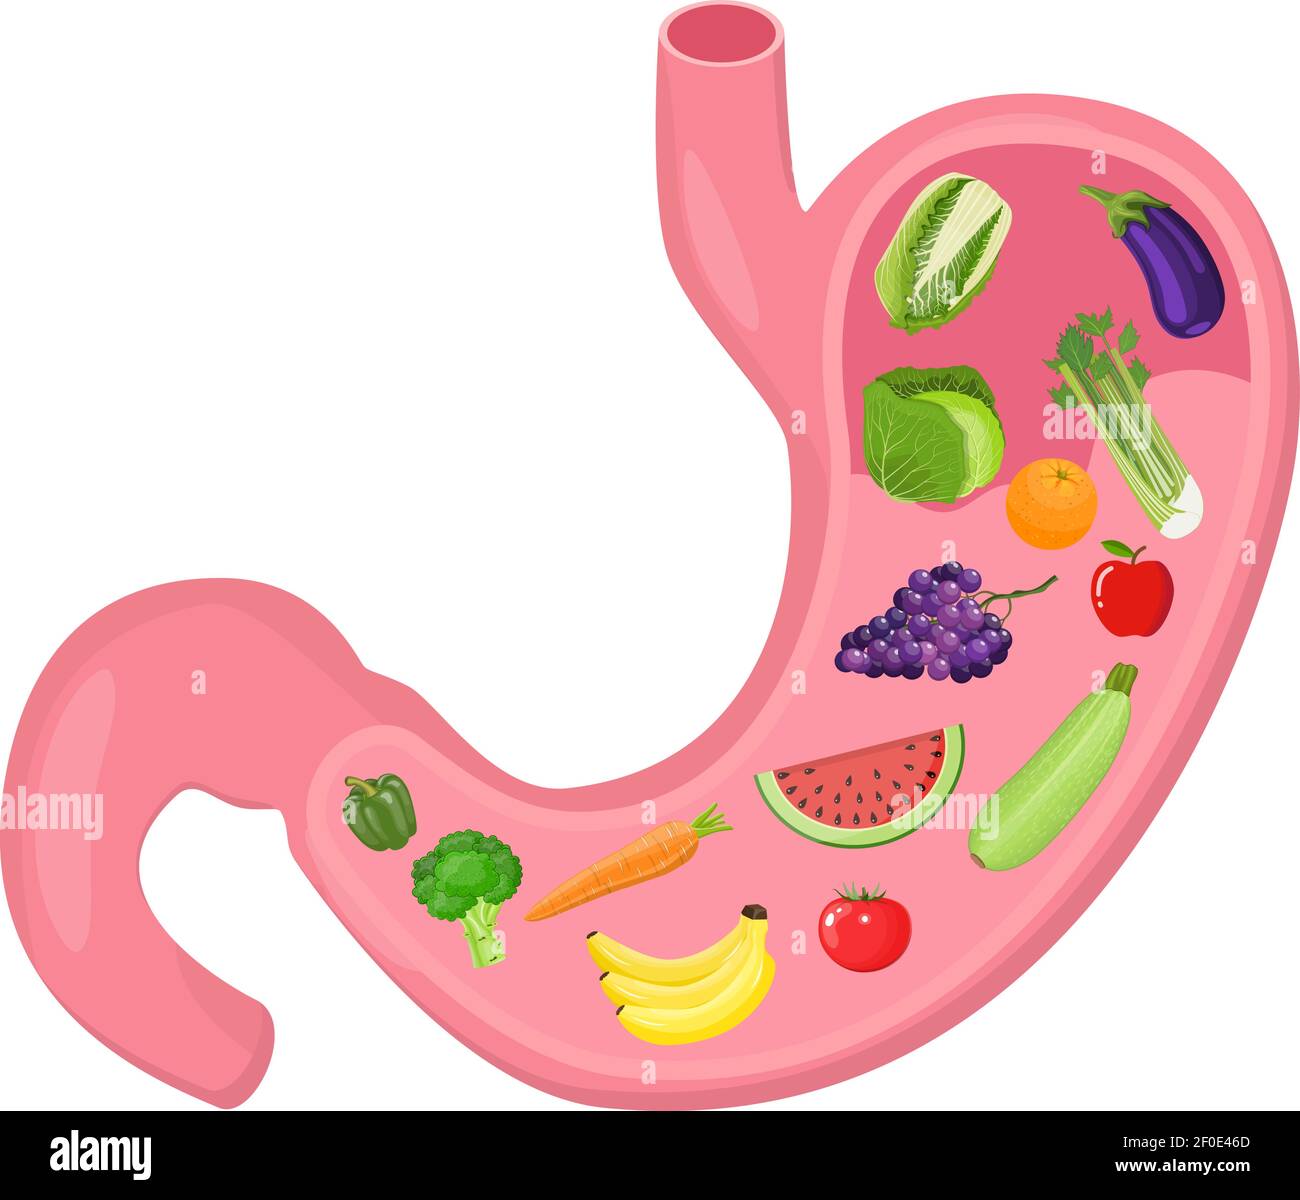 Anatomia interna dello stomaco umano Illustrazione Vettoriale